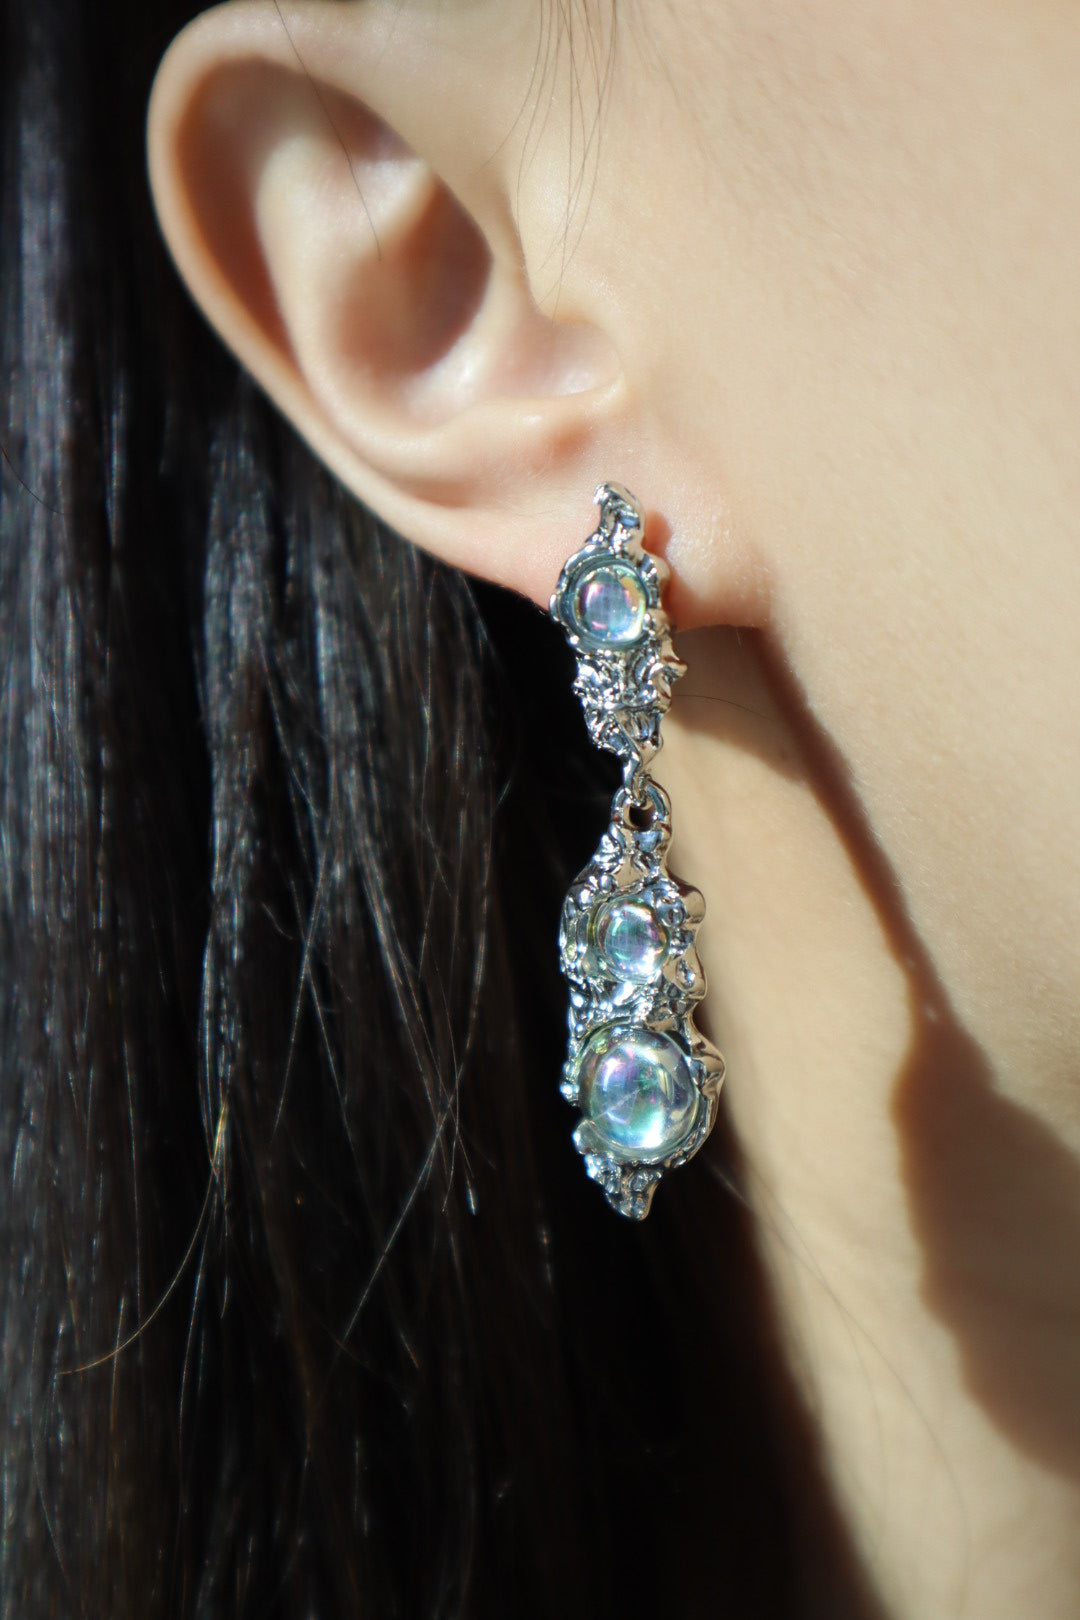 3 in 1 Moonstones earrings